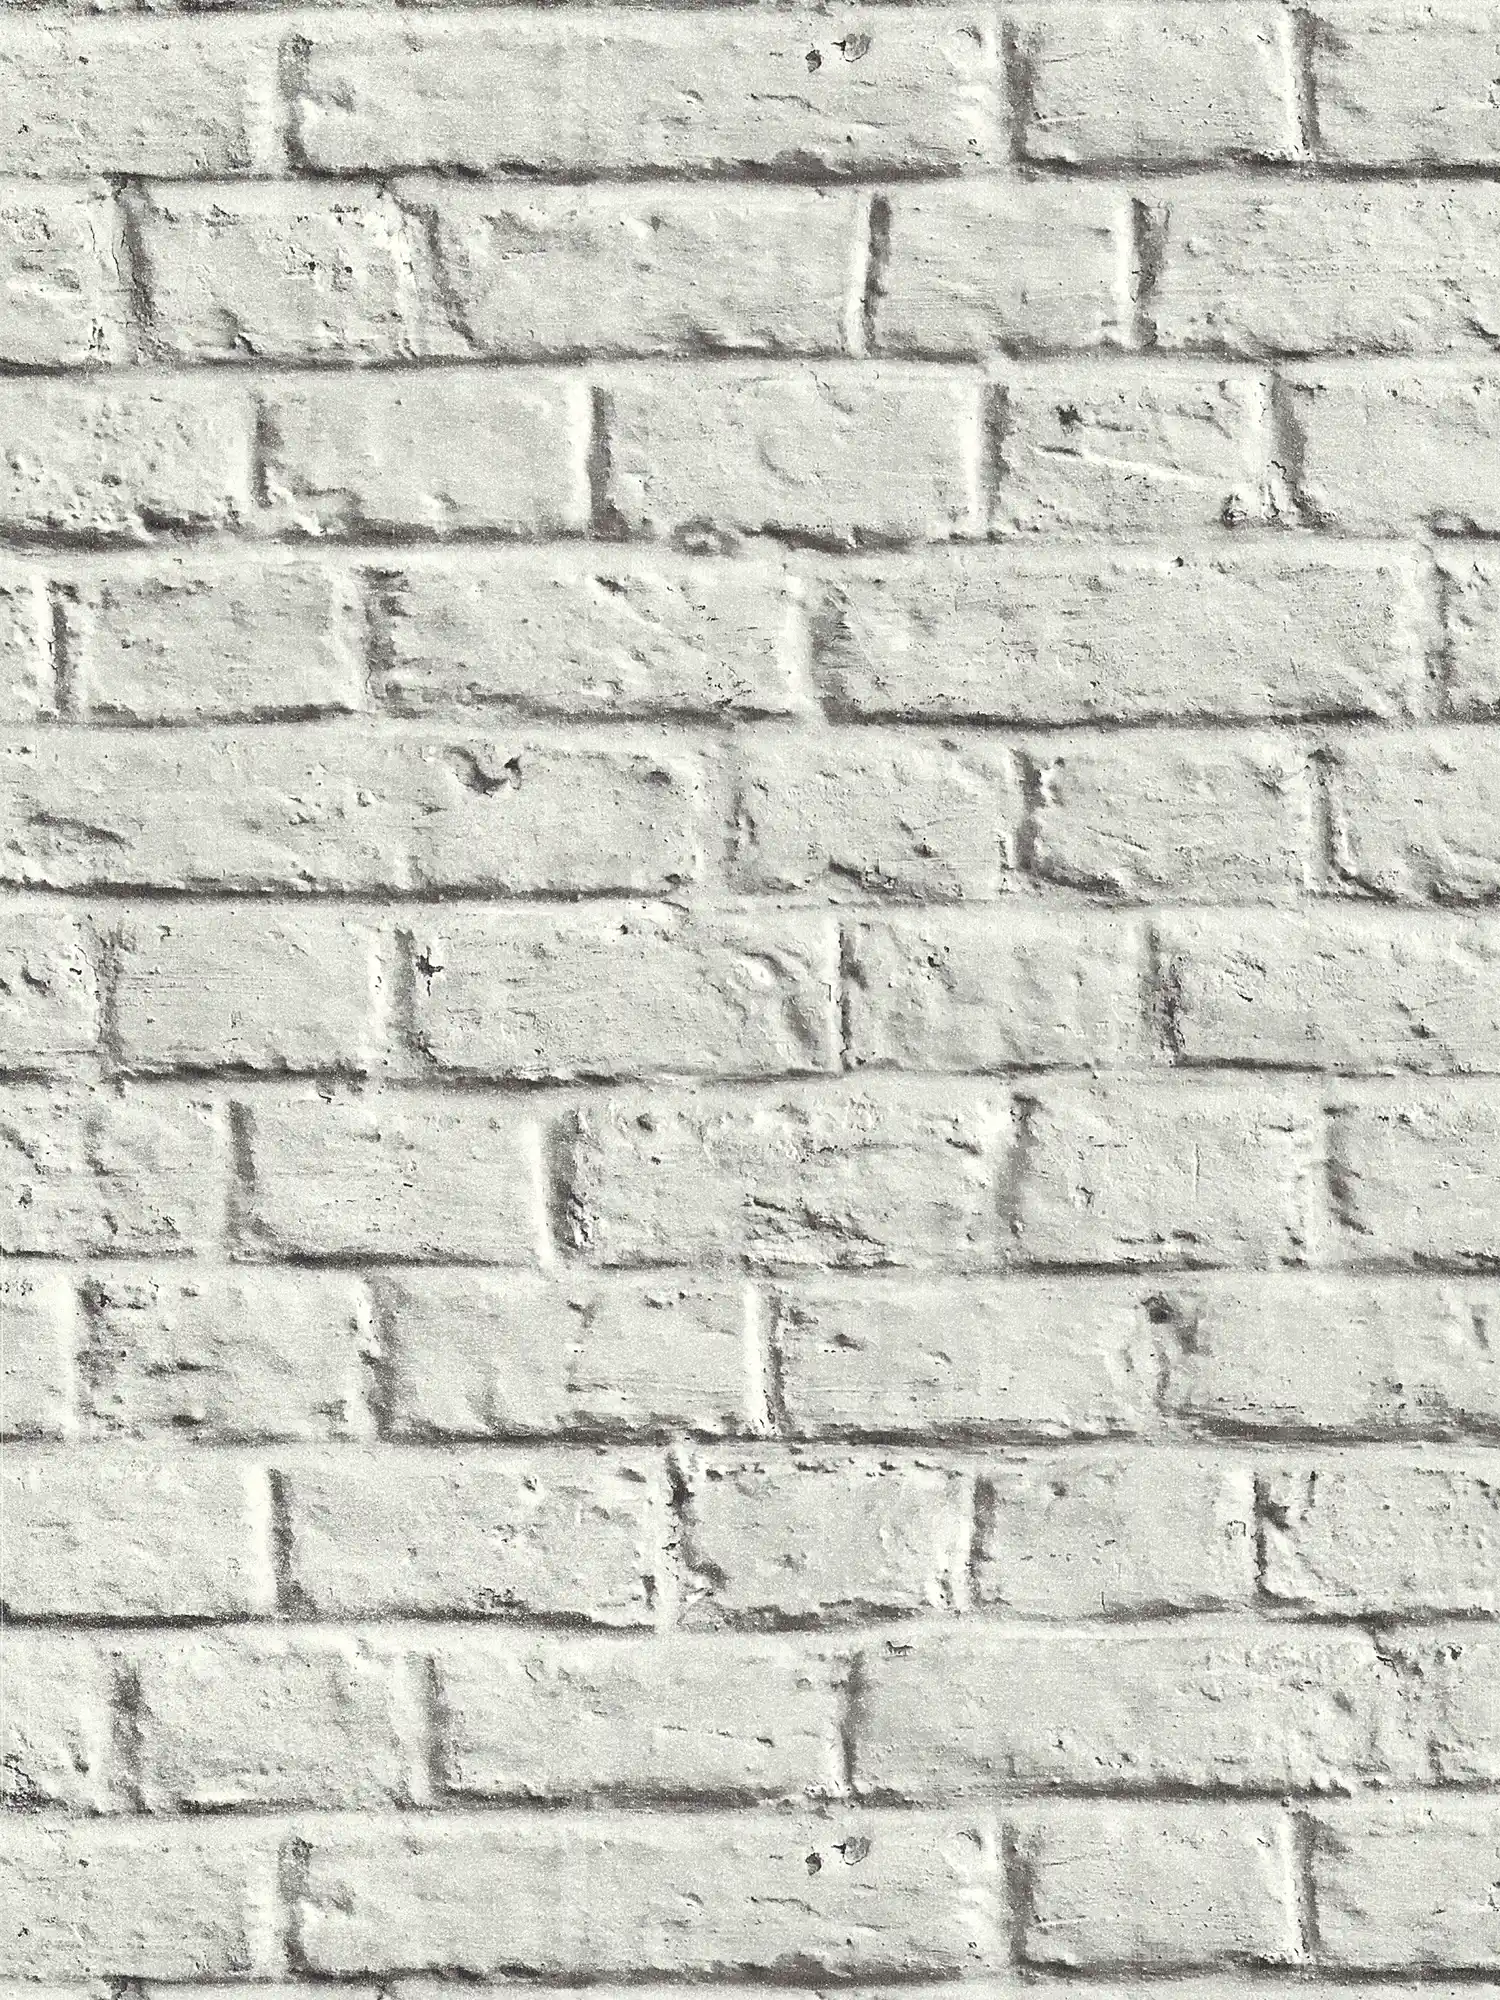 Steenbehang in gladde baksteenlook - grijs, wit
